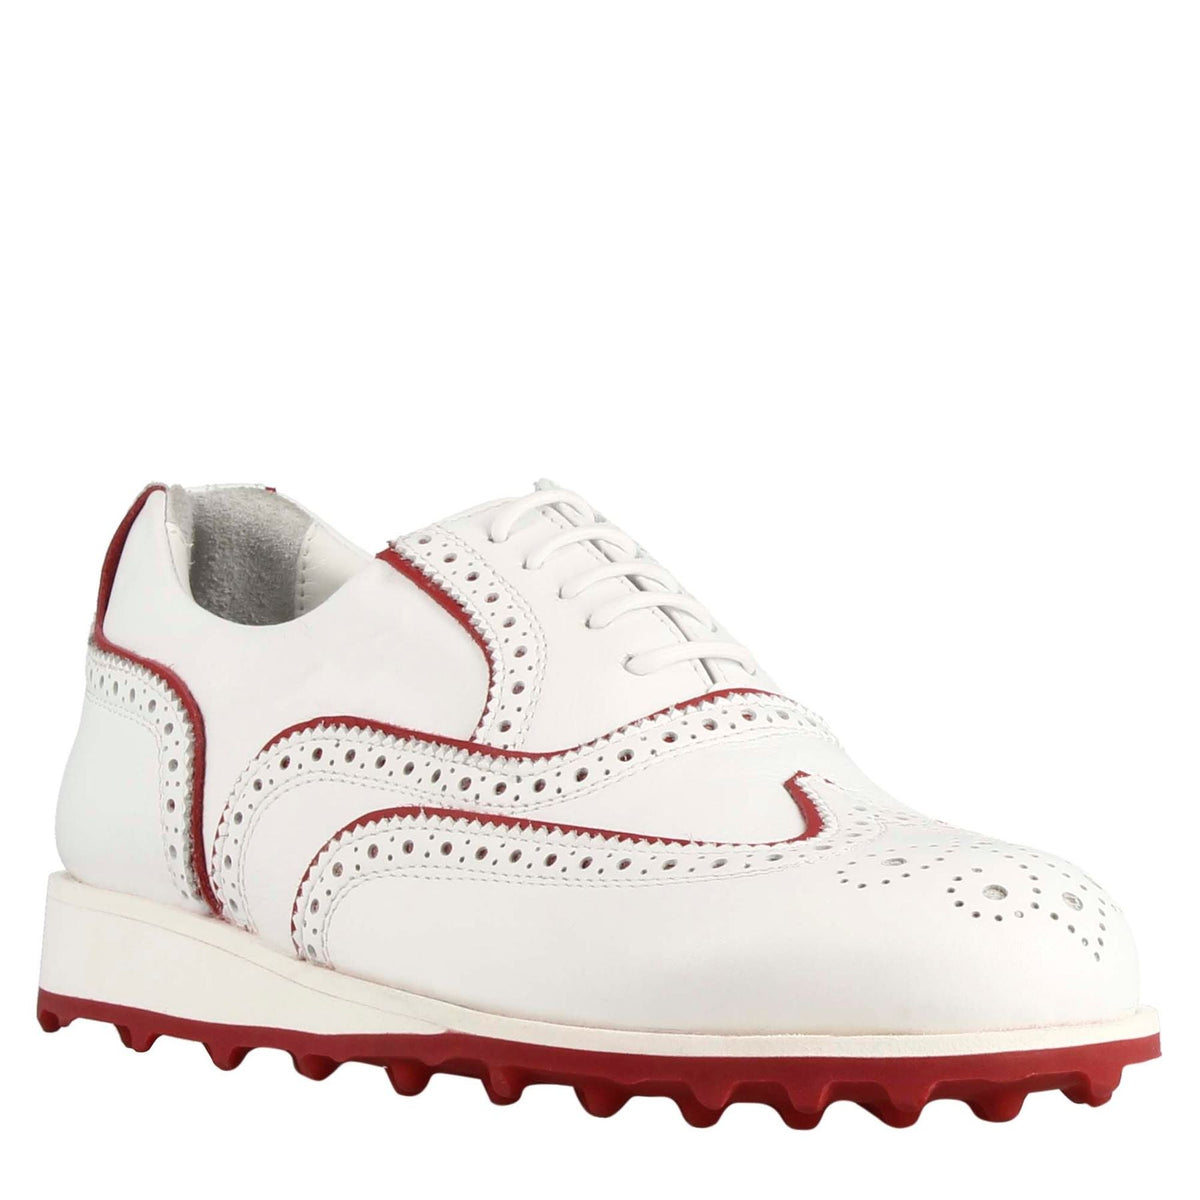 Handgefertigte Herren-Golfschuhe aus weißem Leder mit roten Verzierungen